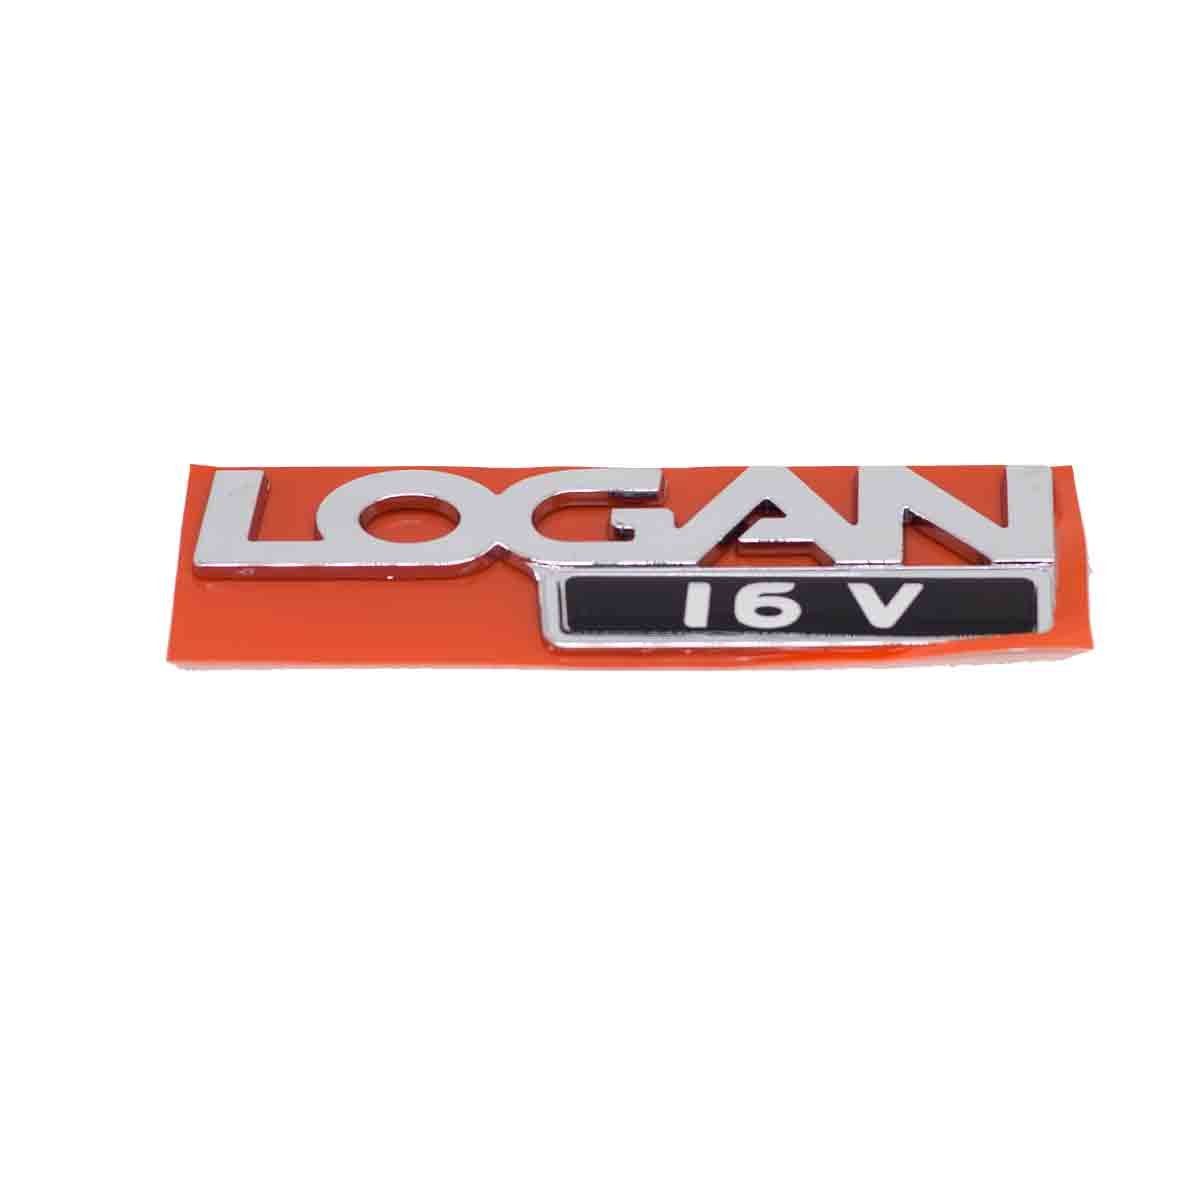 Emblema Logan 16V 13/ (Cromado)